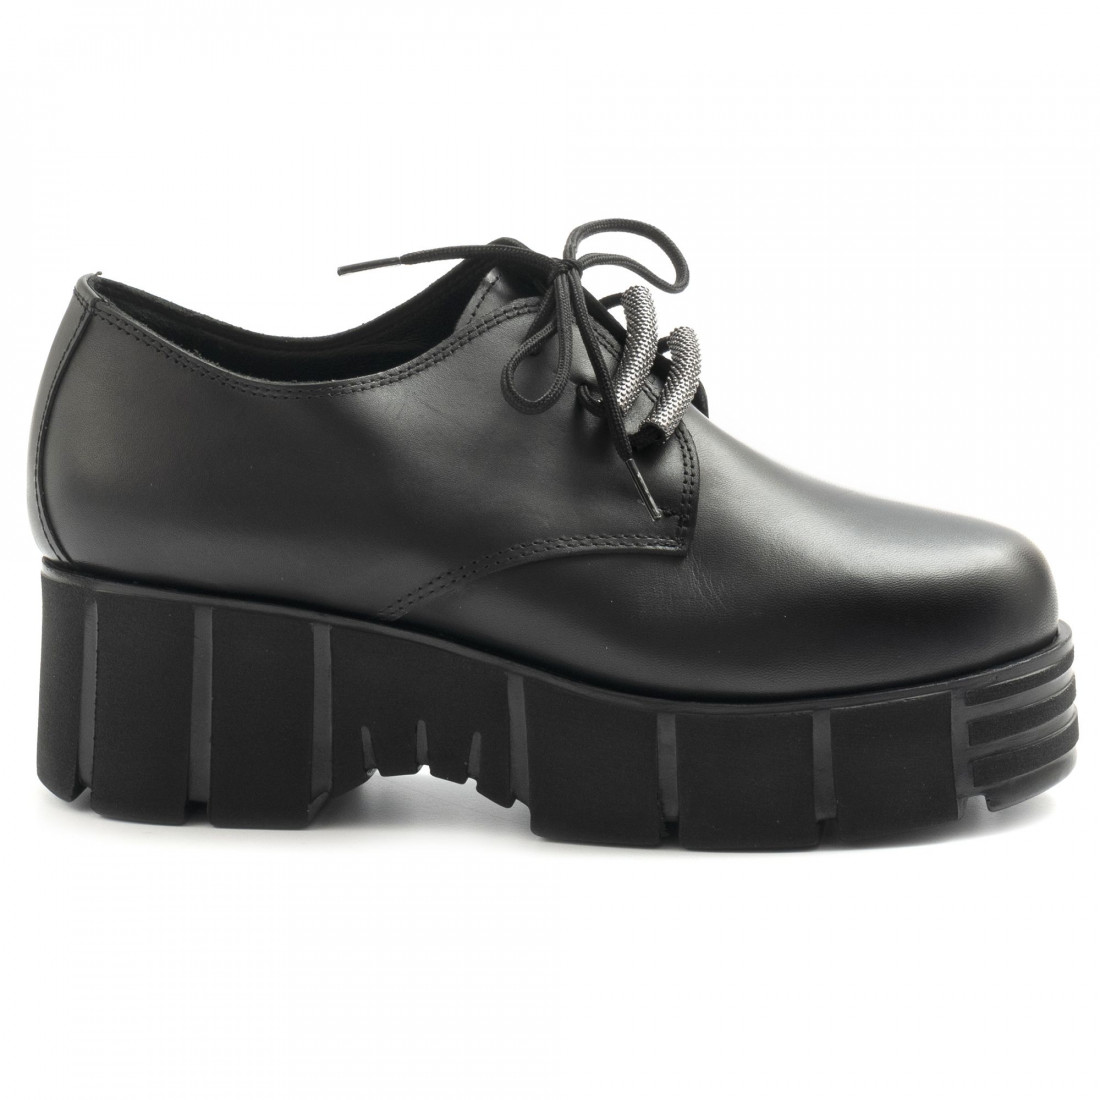 Dr. Scholls Brando Shoes 4517411 | eBay